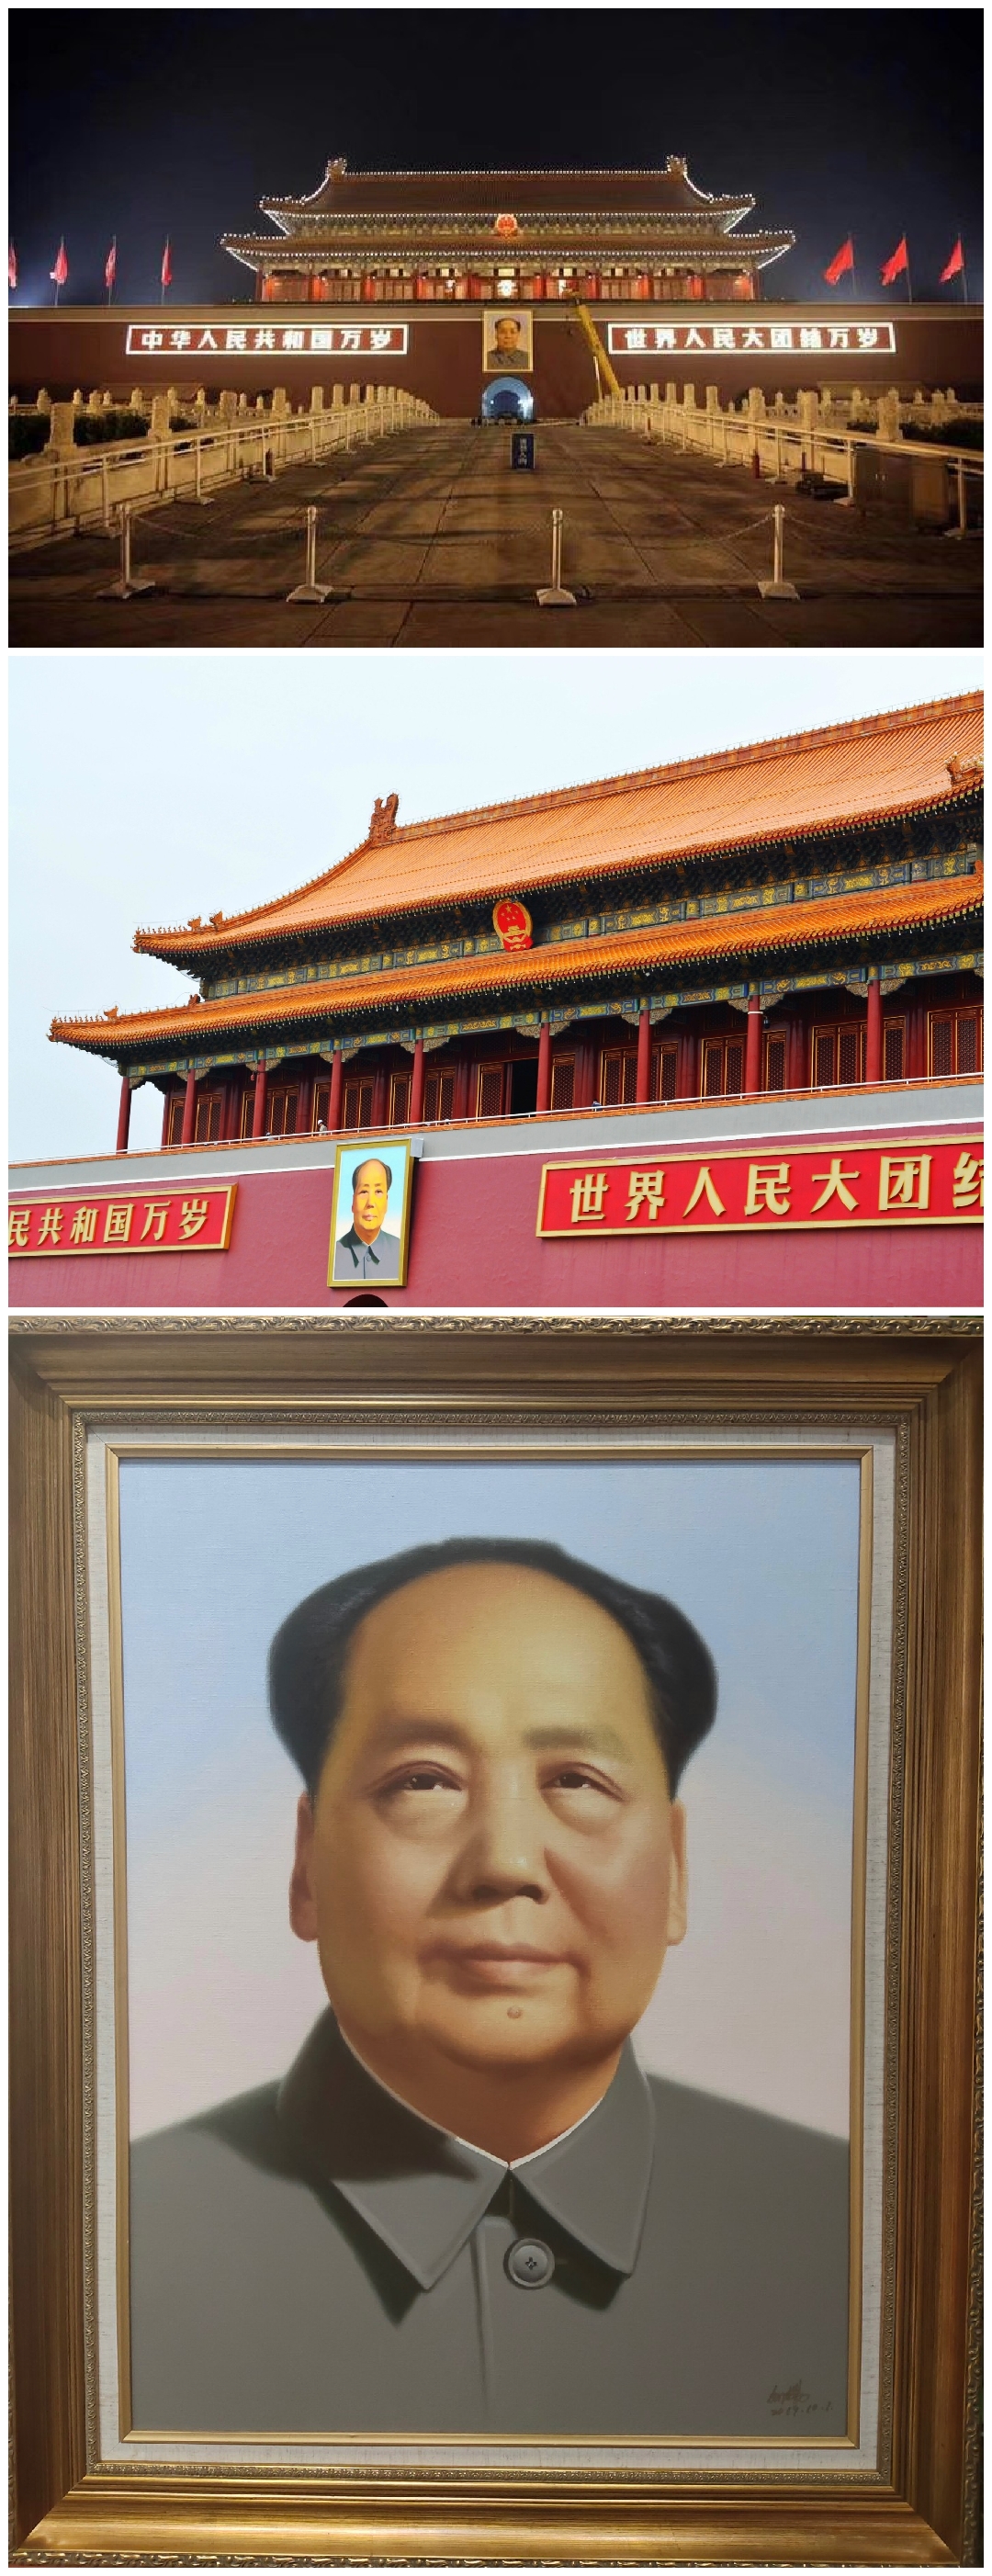 10月1日城楼画师刘杨引关注 同款作品价格直逼百万